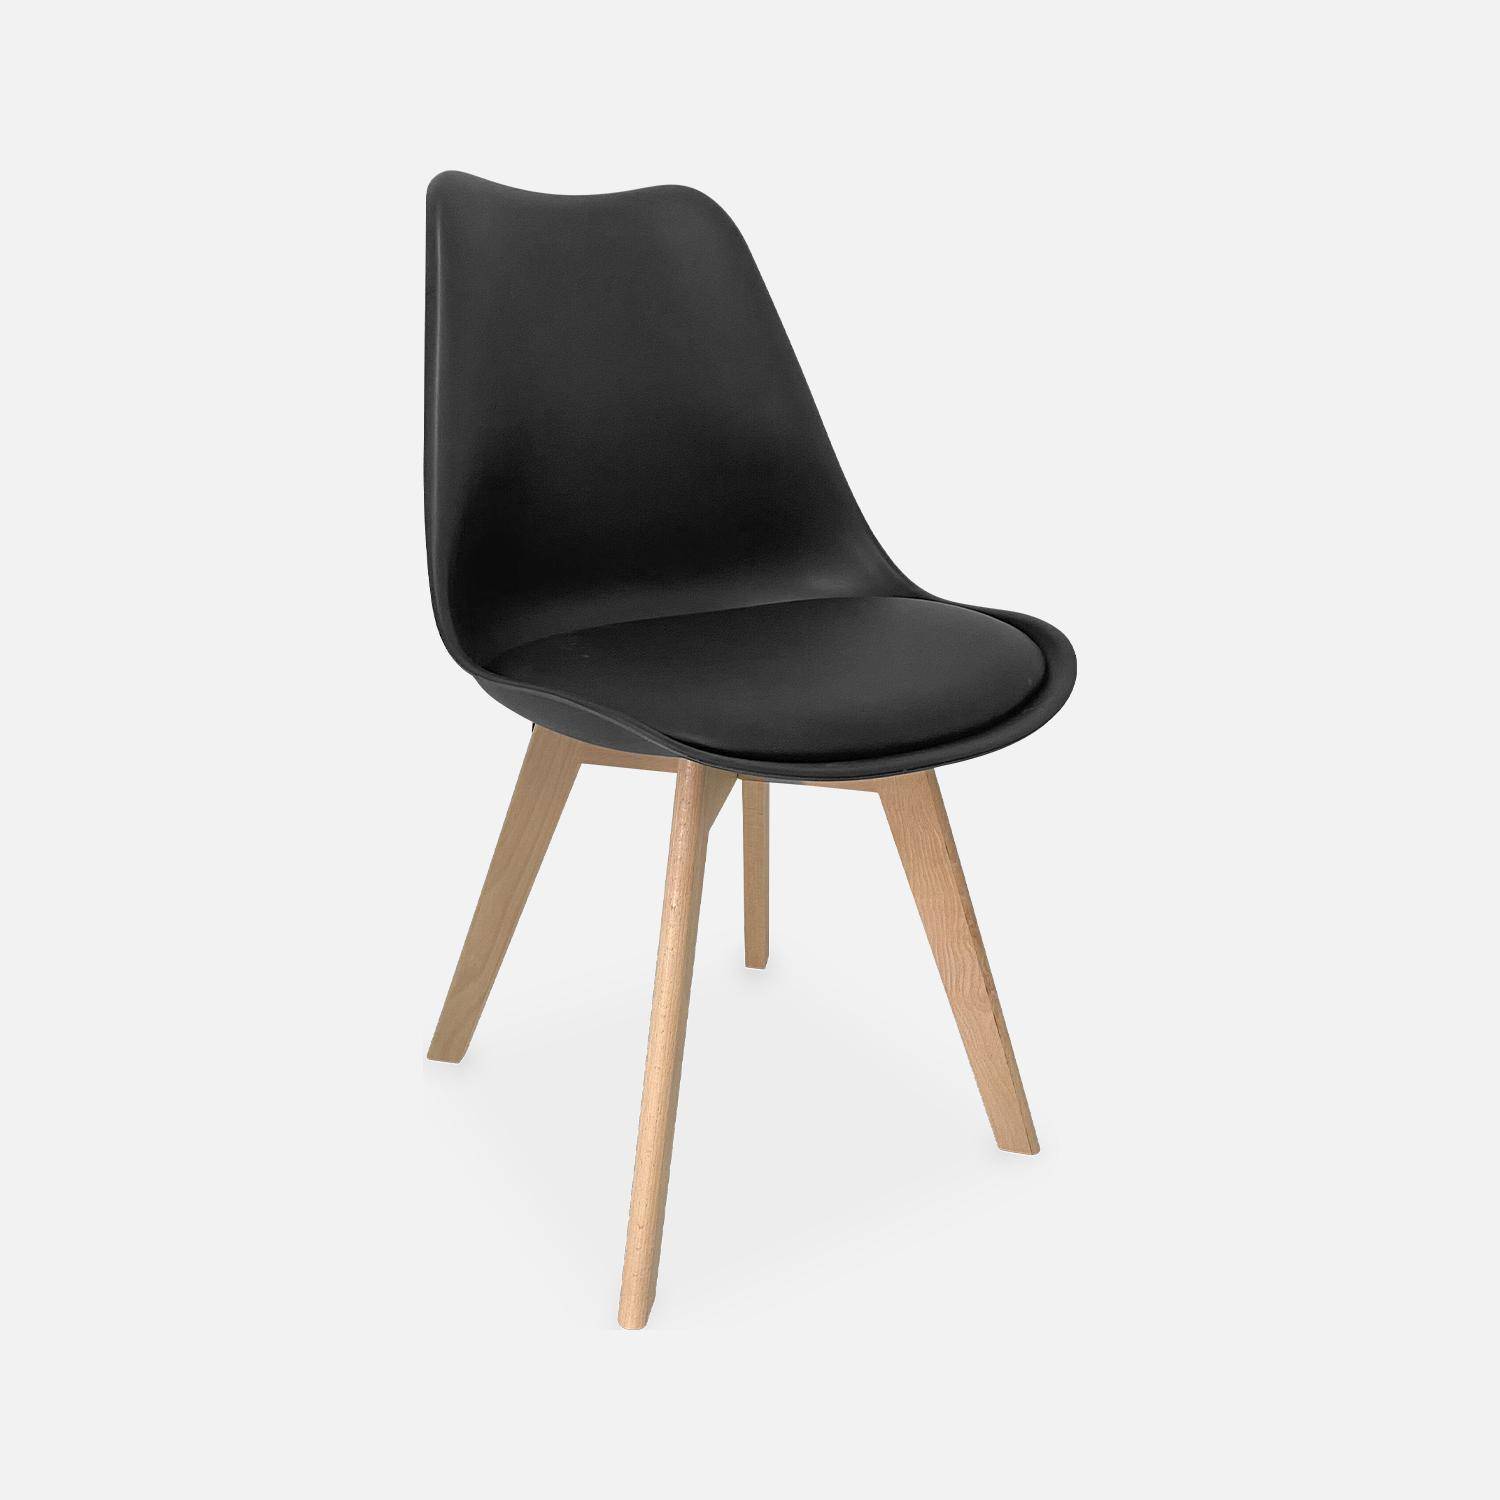 Juego de 6 sillas escandinavas, patas de madera de haya, monoplaza, negro,sweeek,Photo5